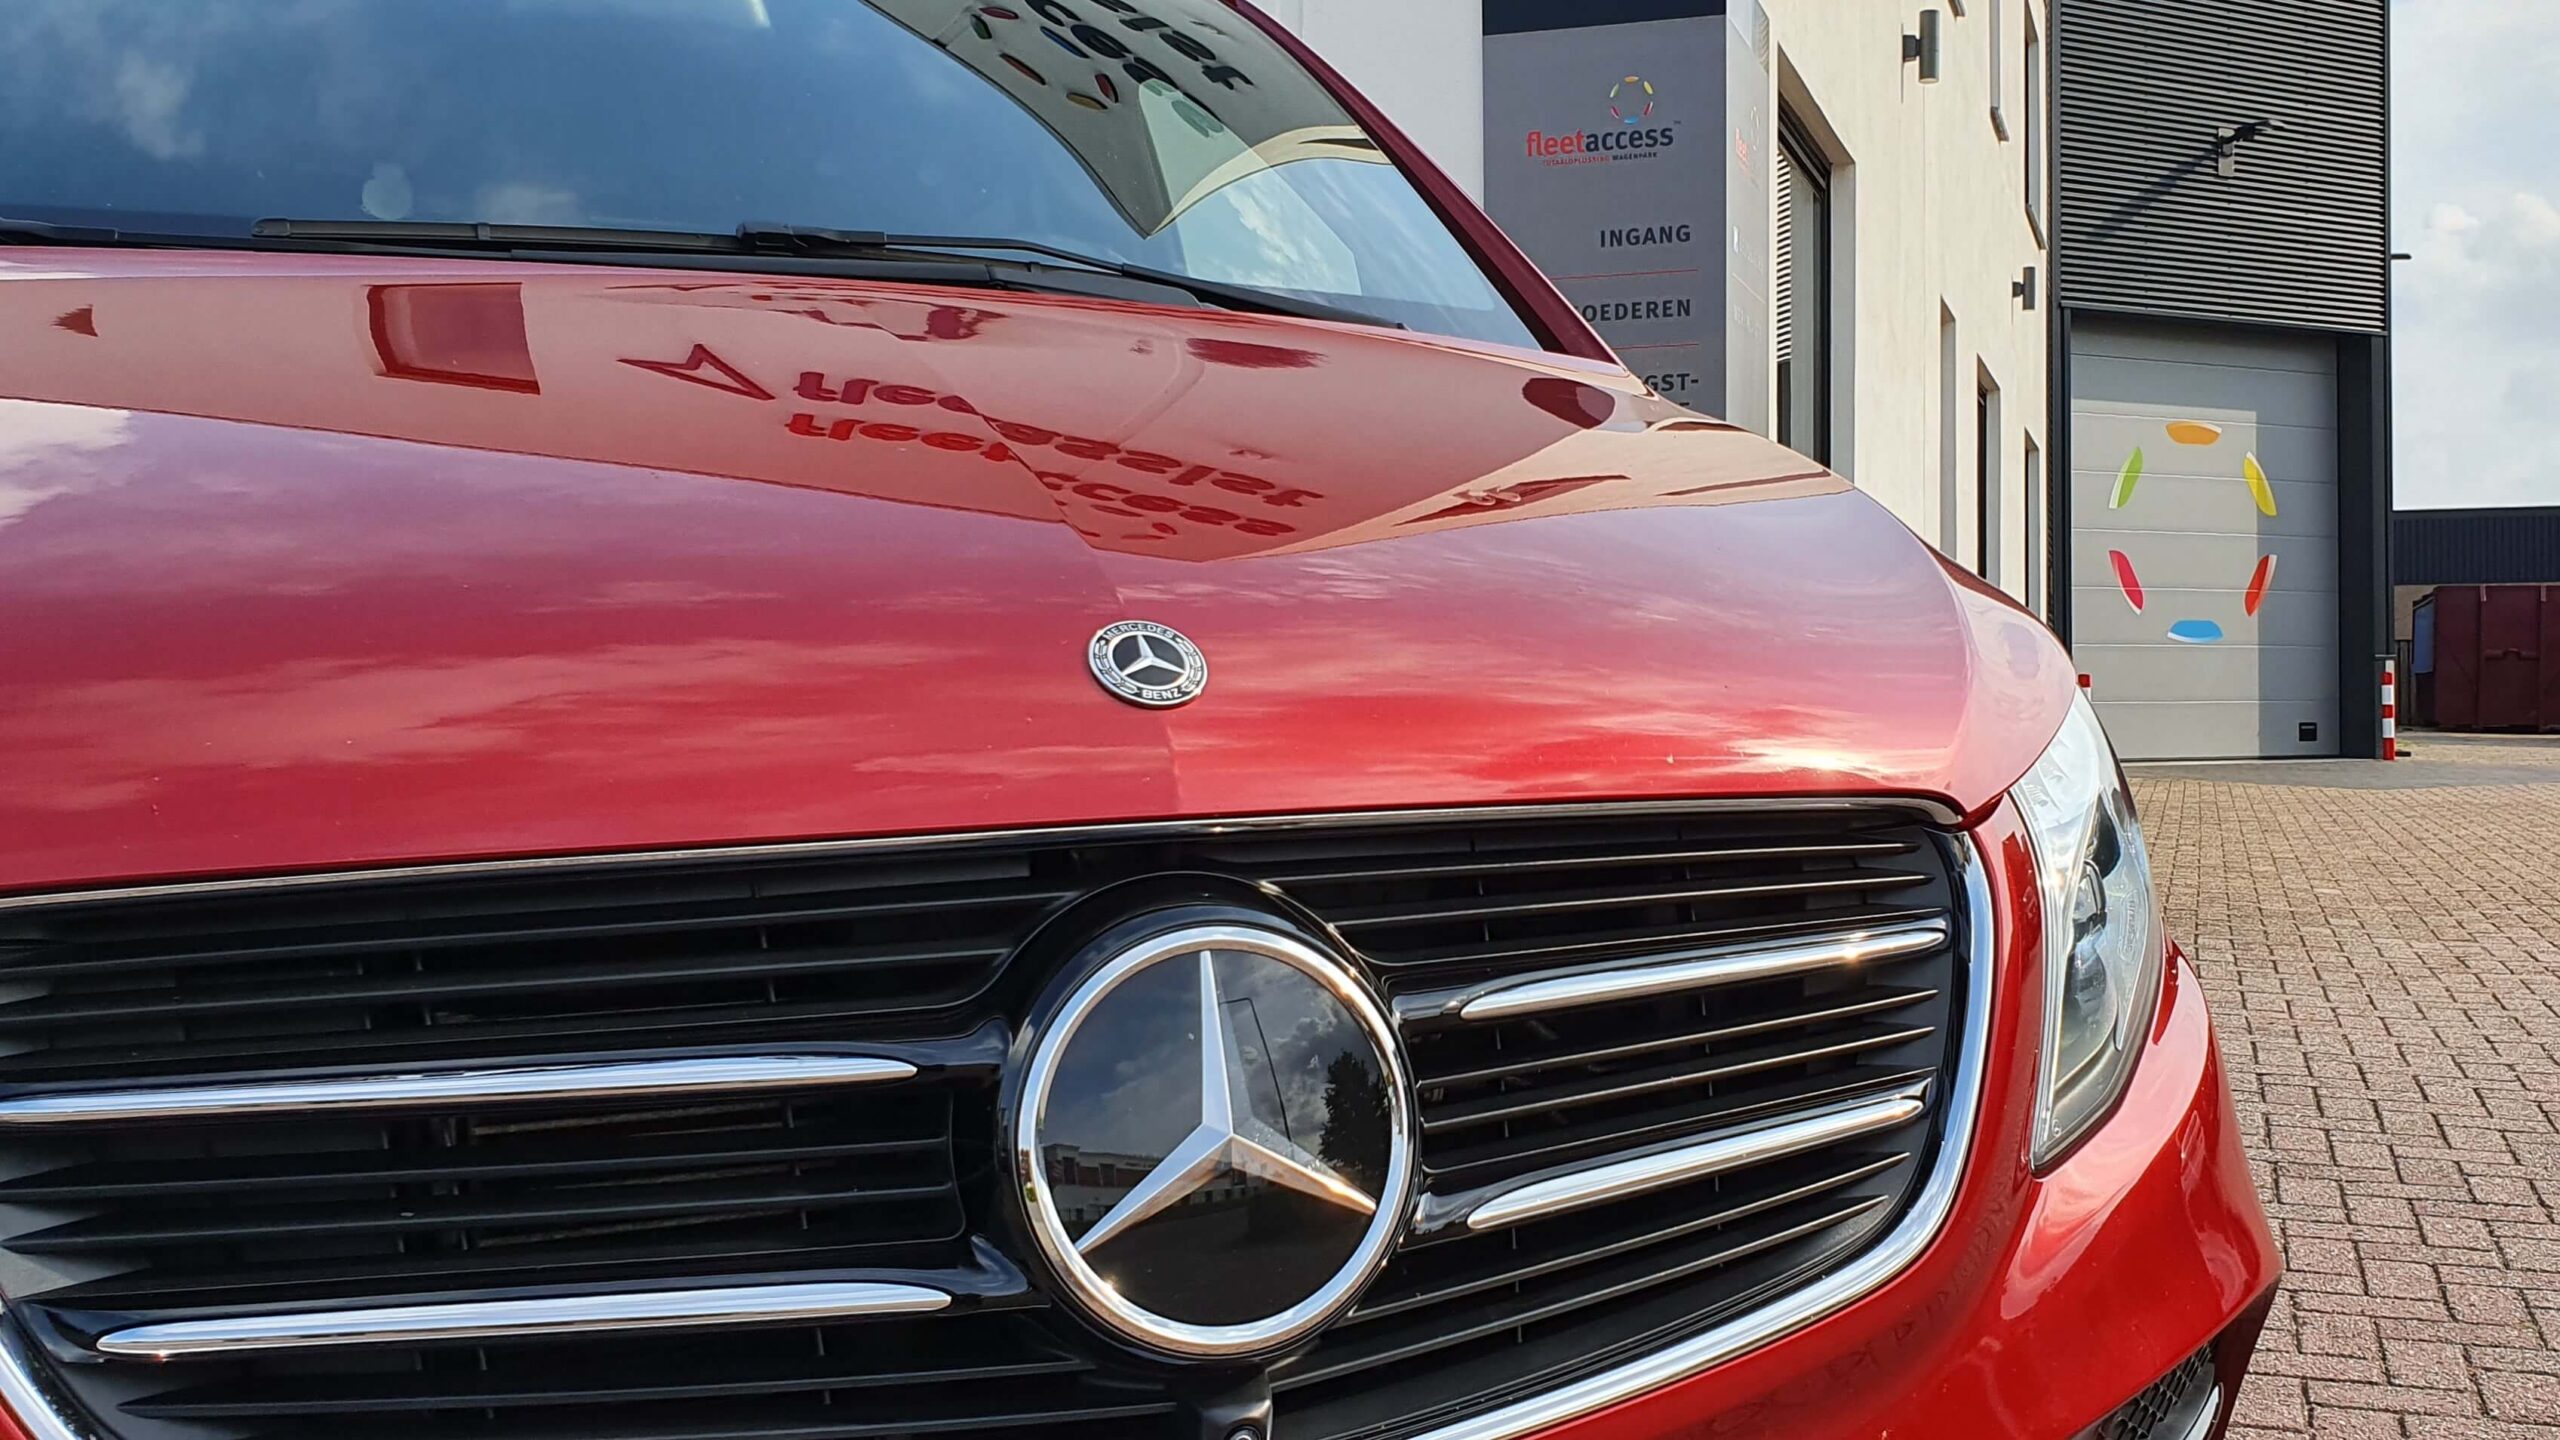 Voorkant van een rode Mercedes-Benz V-Klasse met op de achtergrond het pand met logo van Fleetaccess alarmsystemen